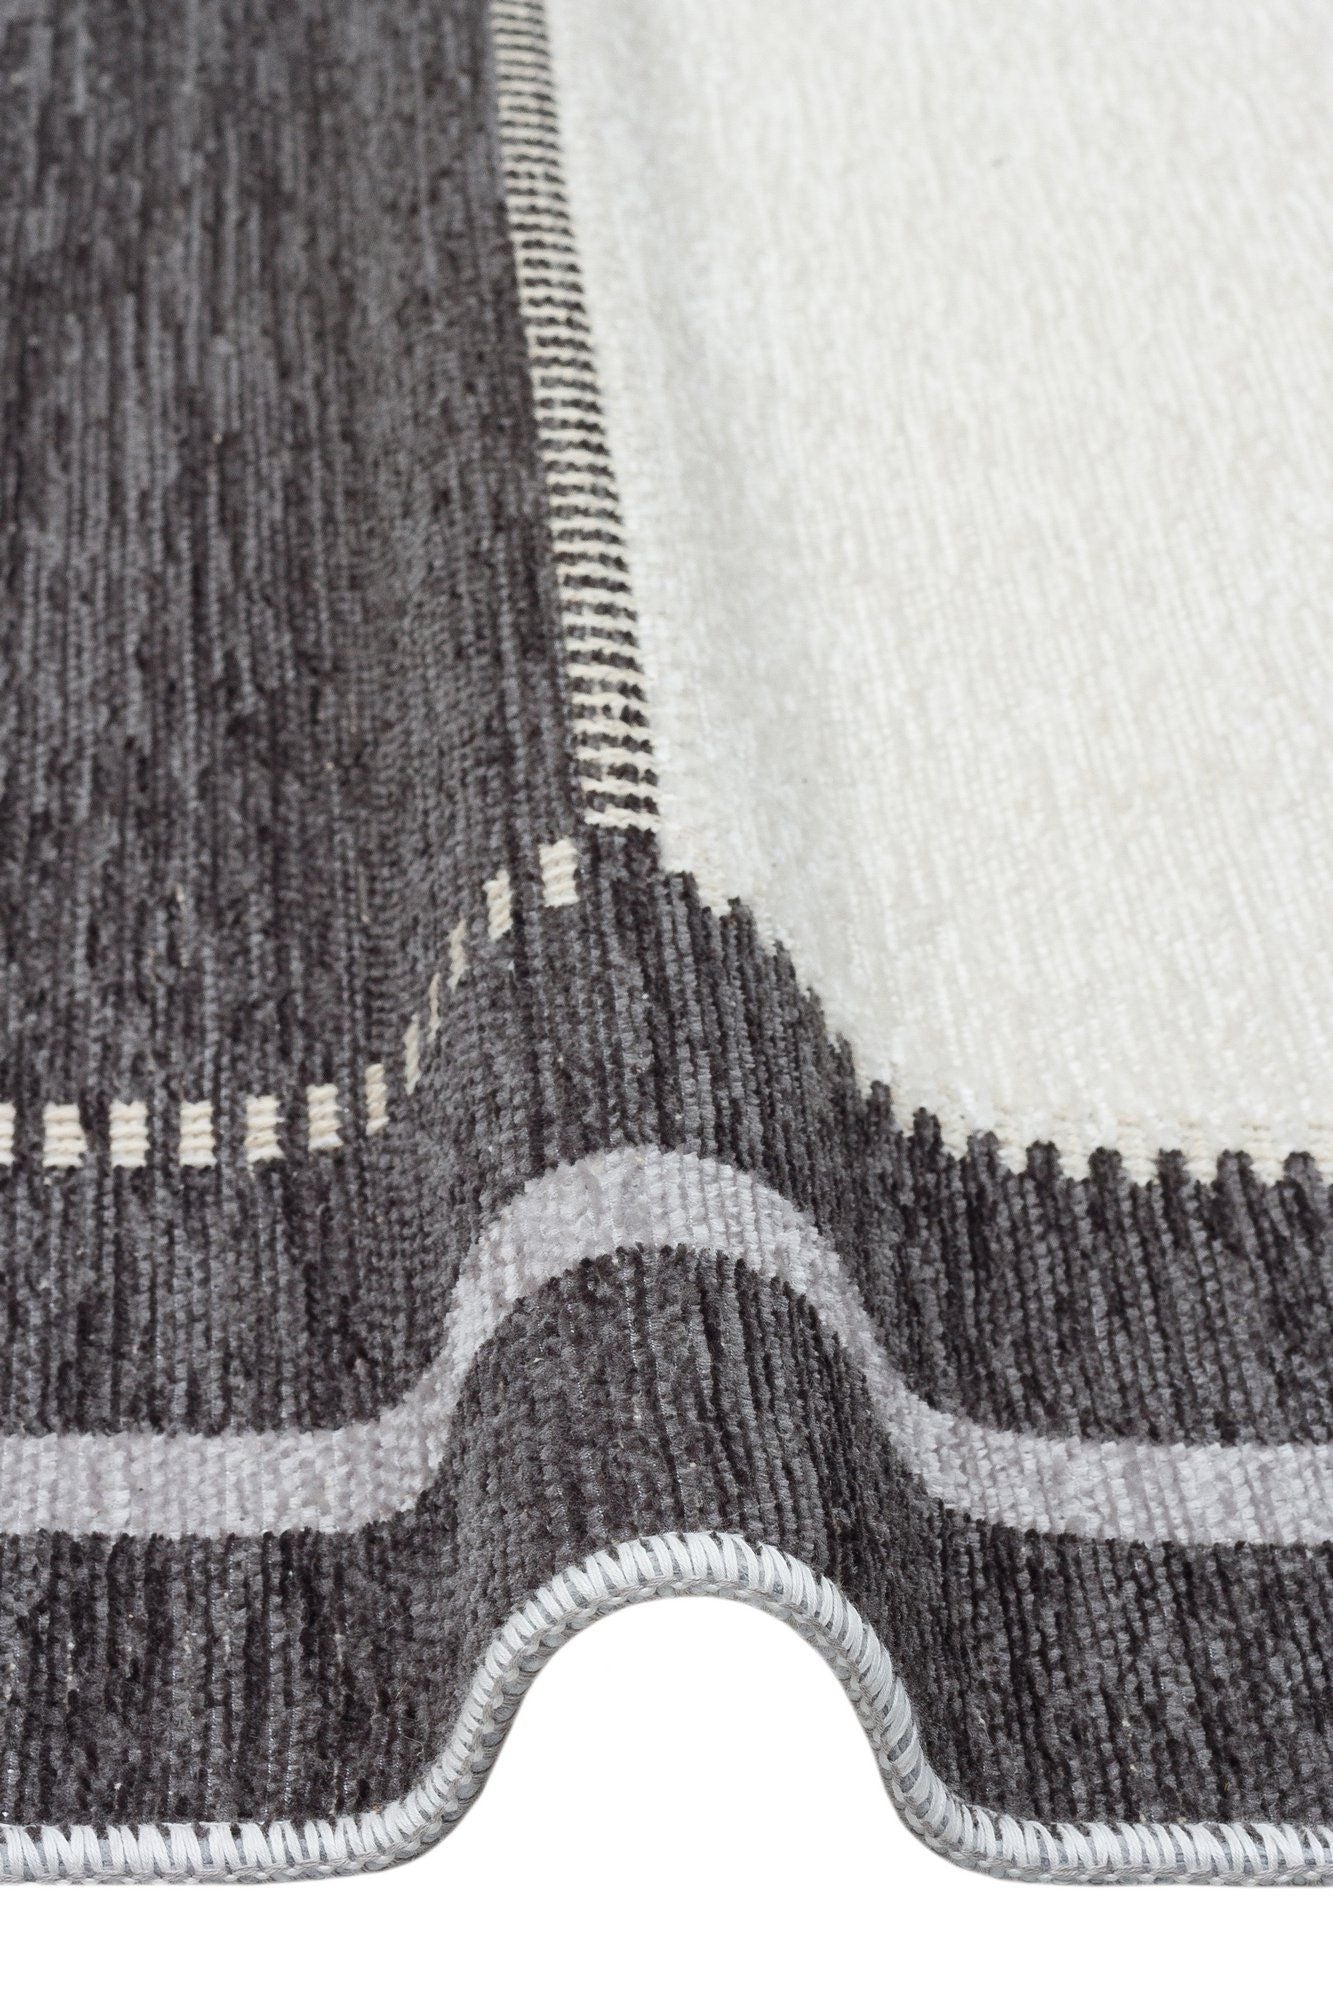 Nk 08 - grå, antracit - tæppe (115 x 180)